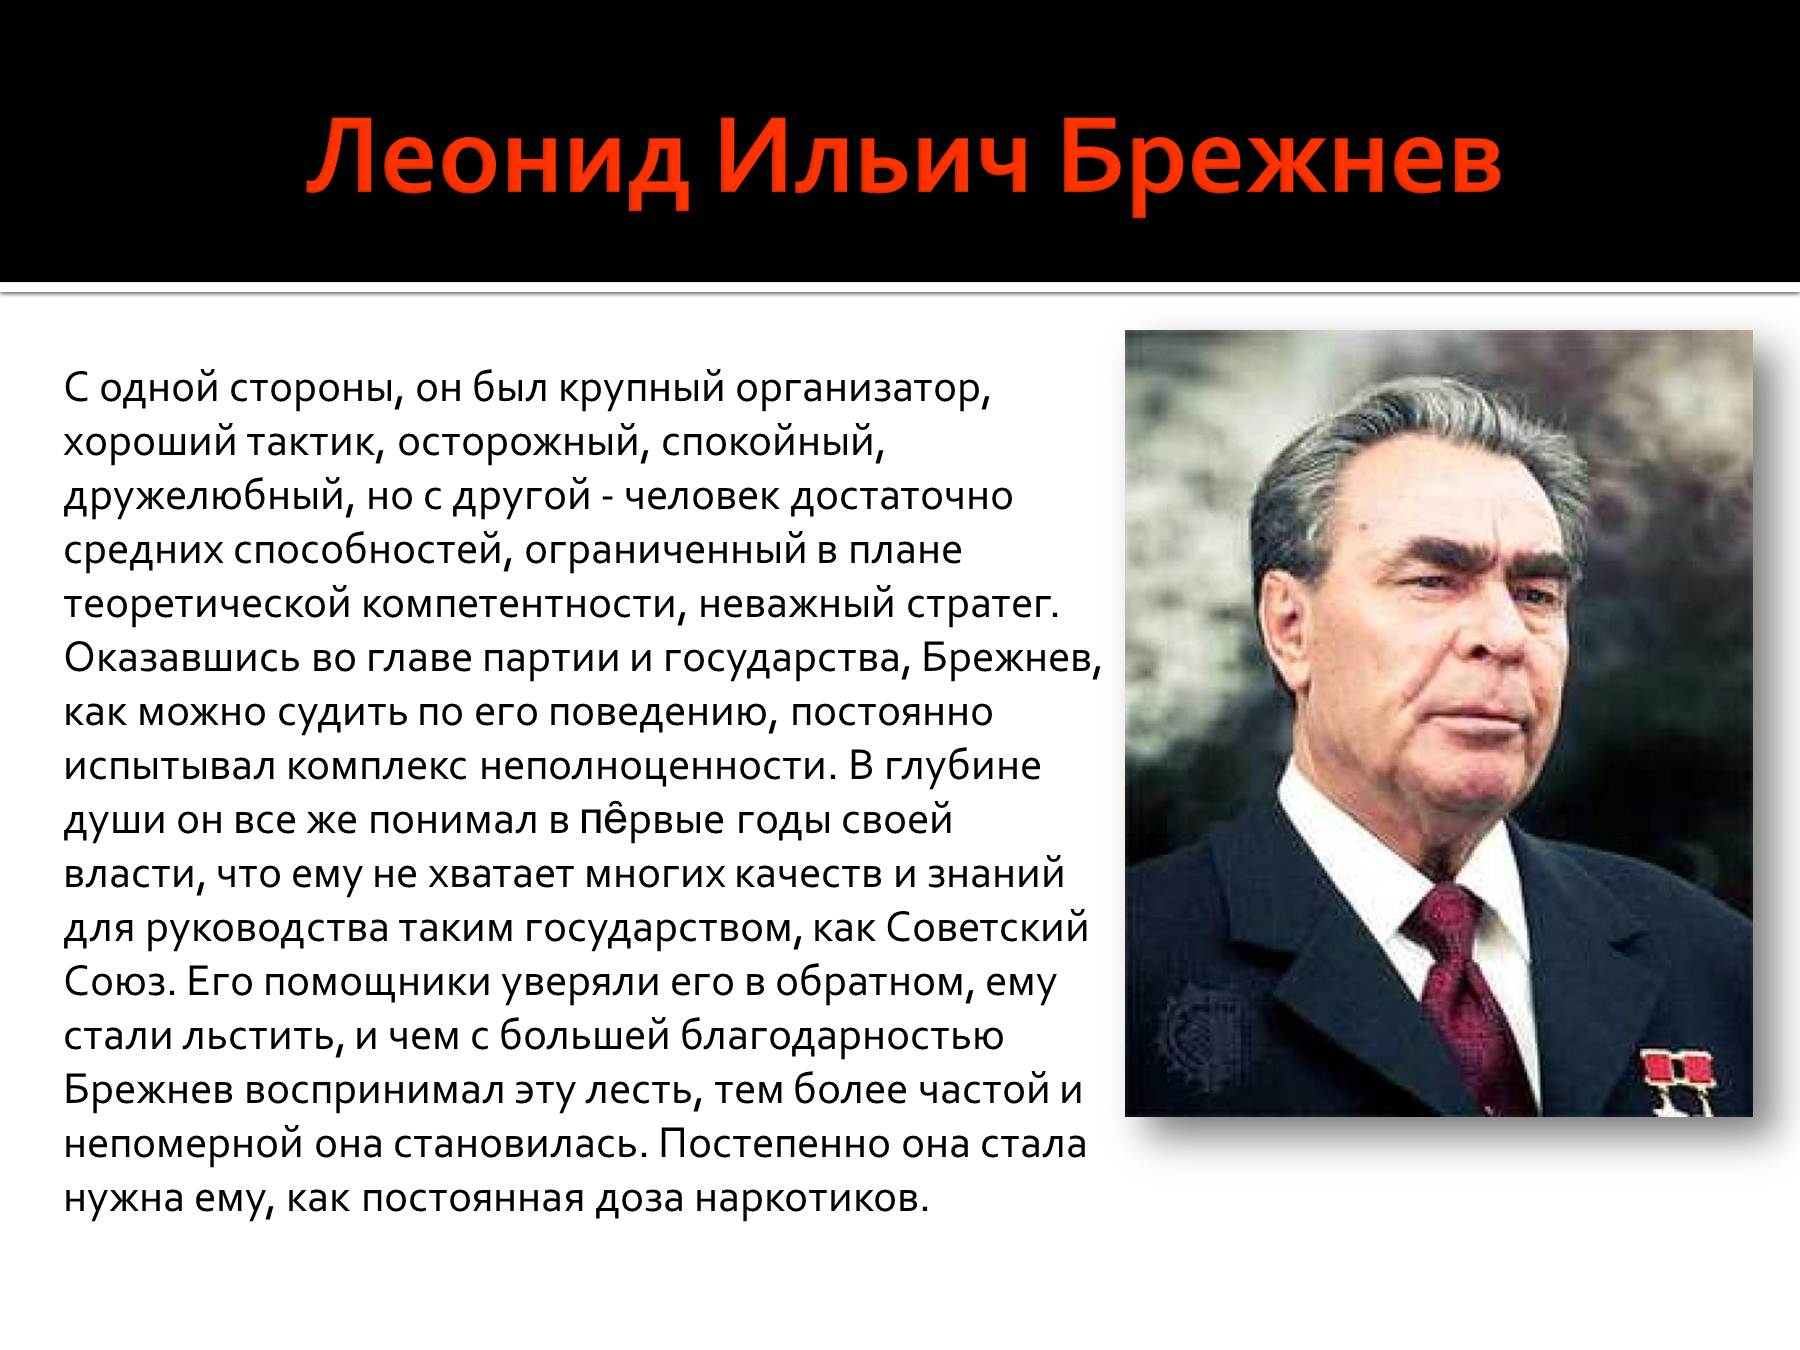 Презентация политические деятели. Политический портрет л и Брежнева кратко. Брежнев исторический портрет эпоха застоя.